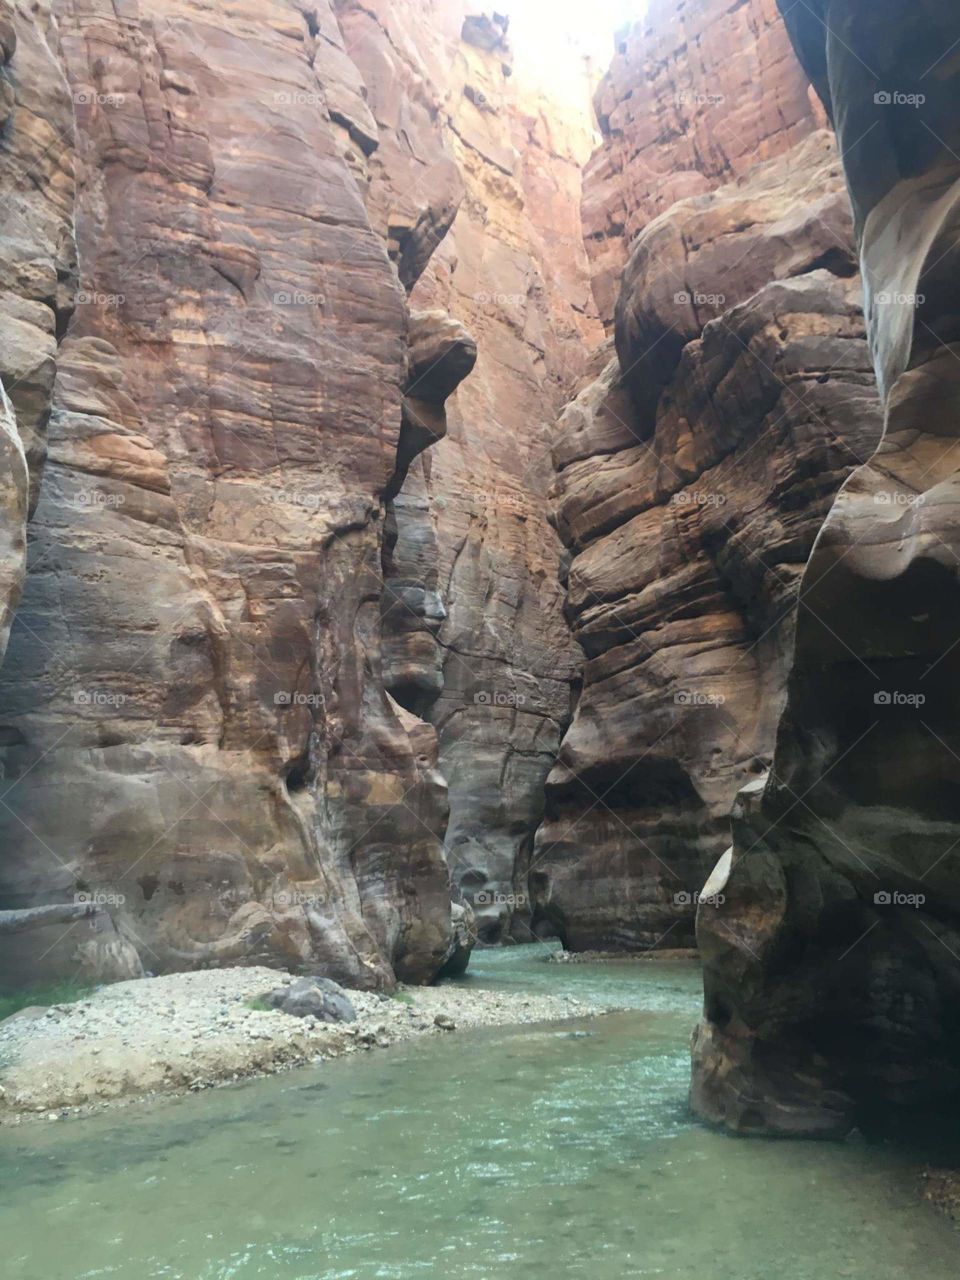 Mujib canyon, Jordan, September 2016